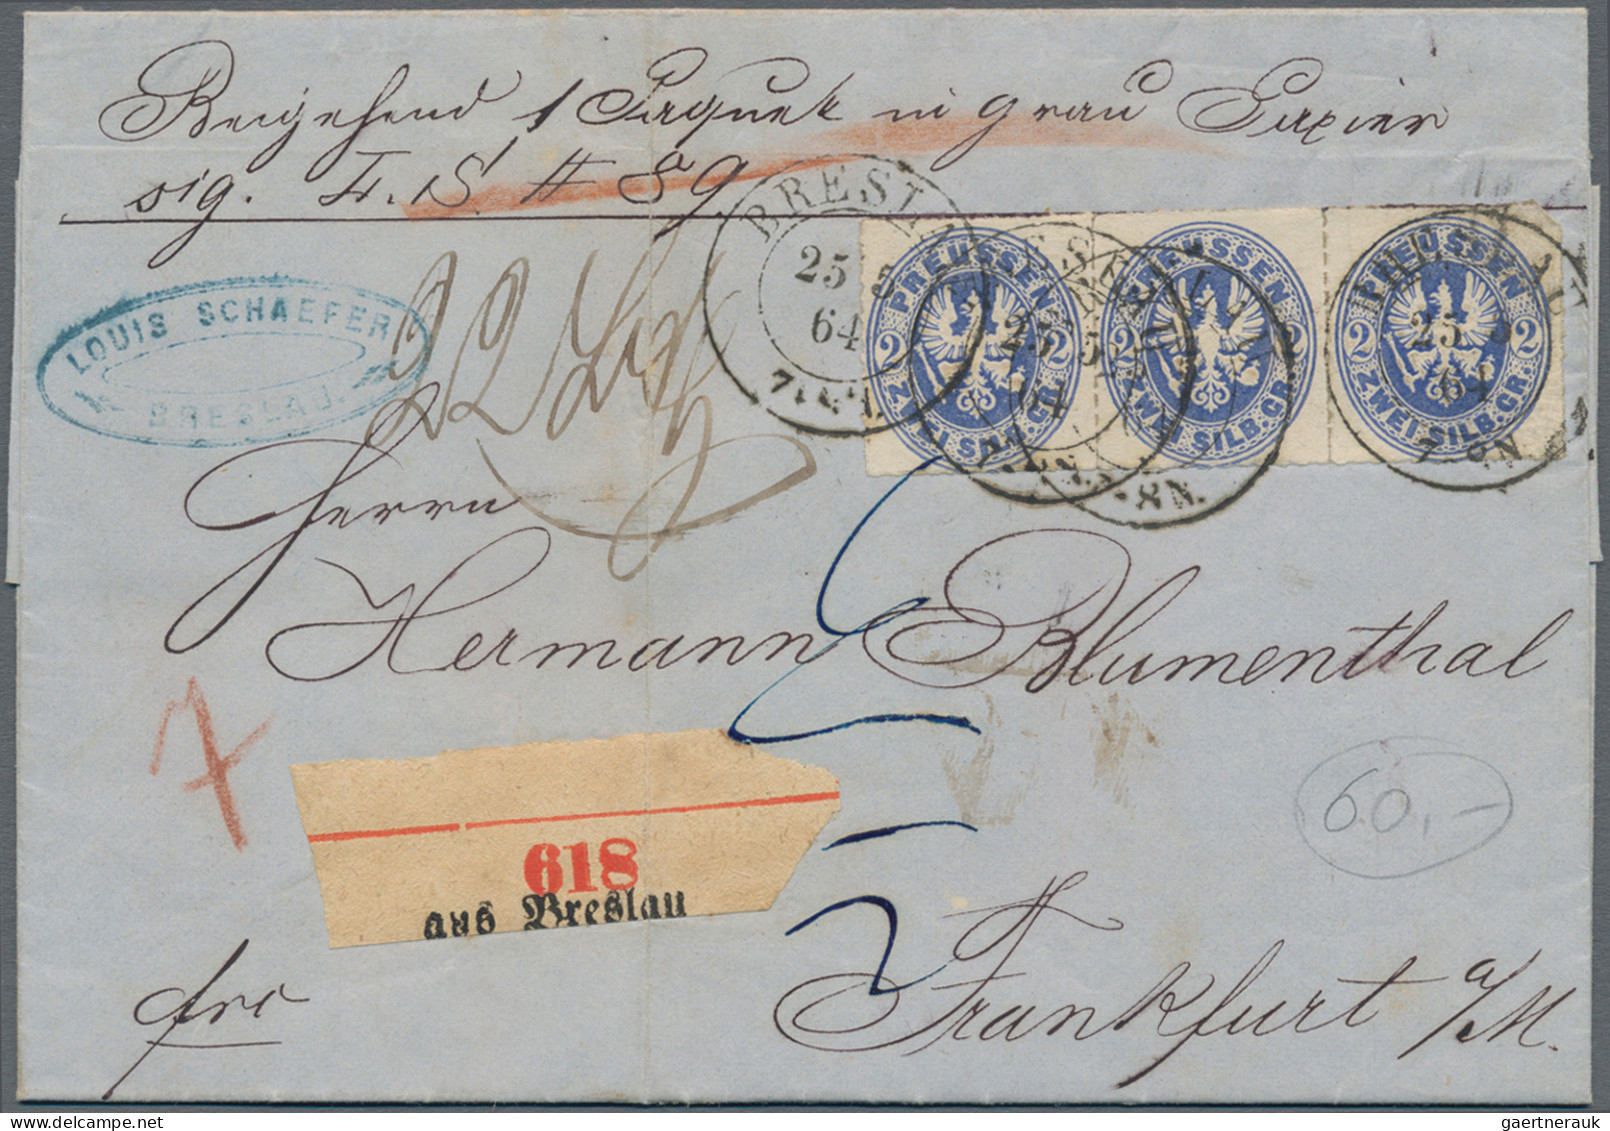 Altdeutschland: 1811/1912, umfangreicher Bestand von insg. ca. 160 Briefen, eini